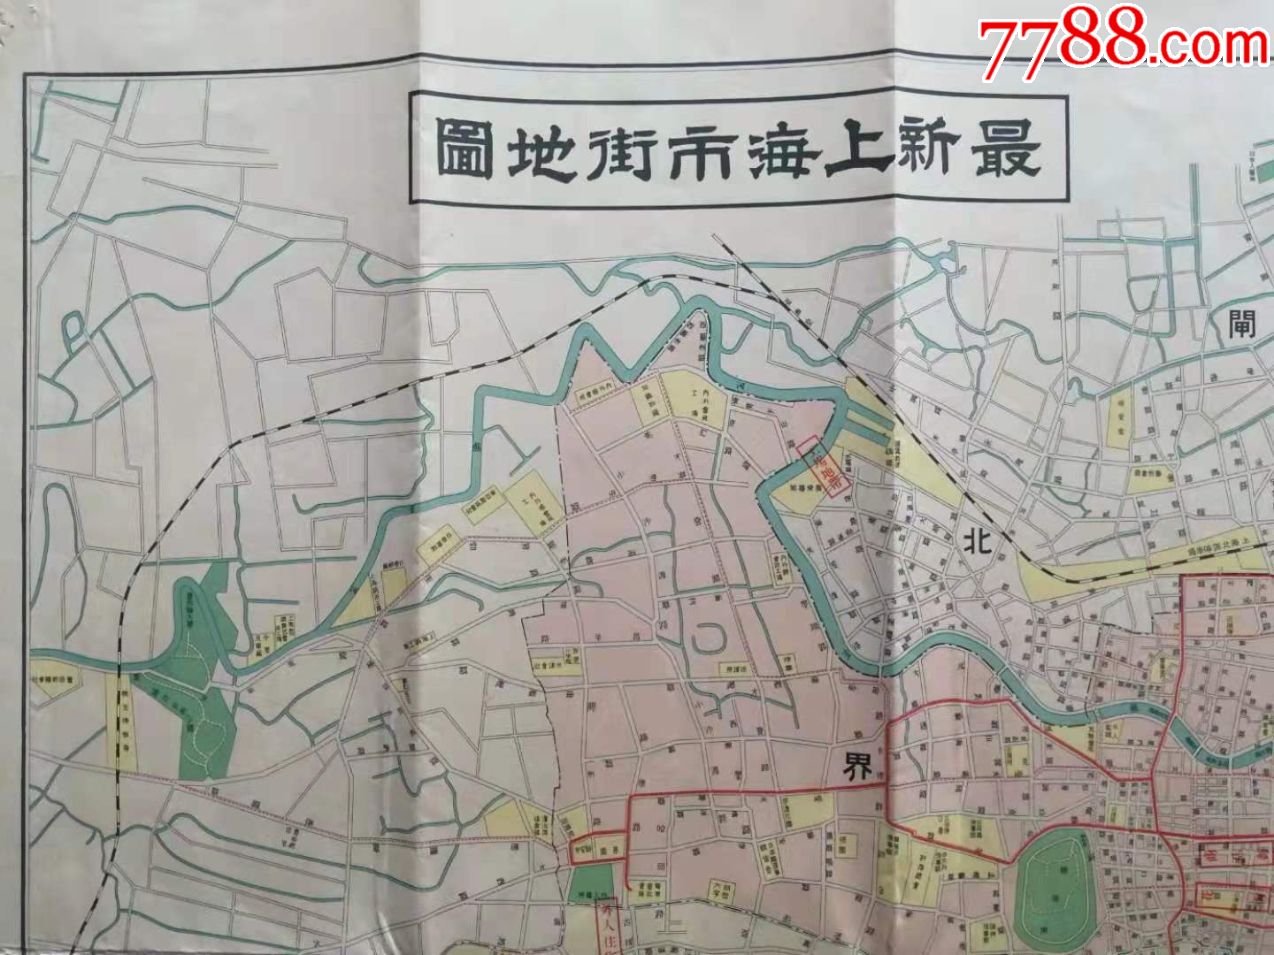 >> 民国老上海地图,1932年日制《最新上海市街地图》,附中华民国详细